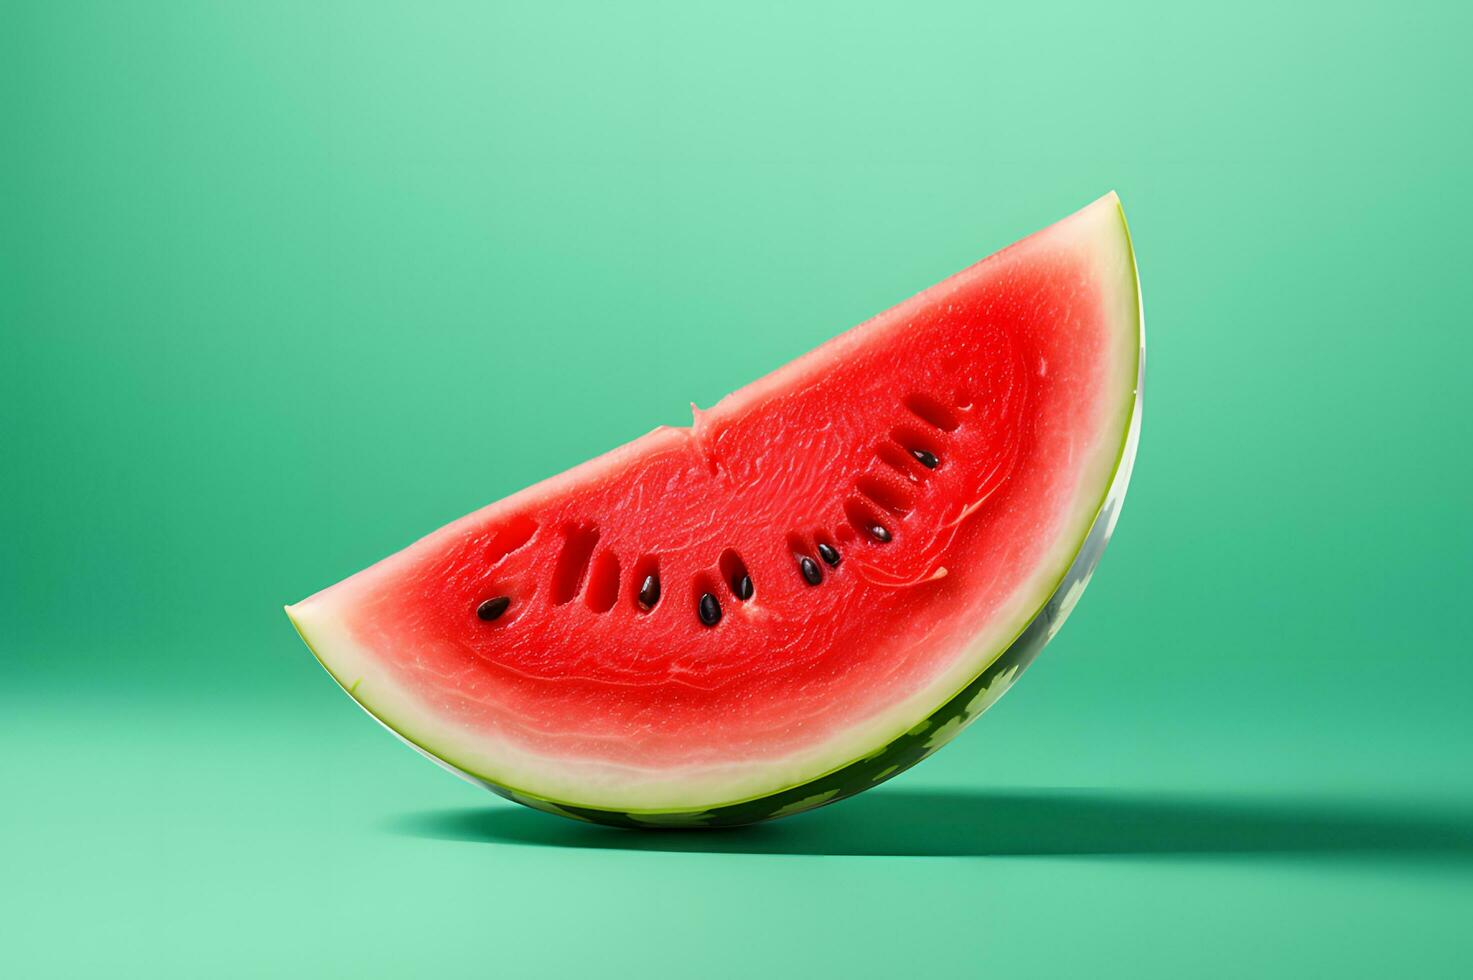 plak van vers watermeloen foto